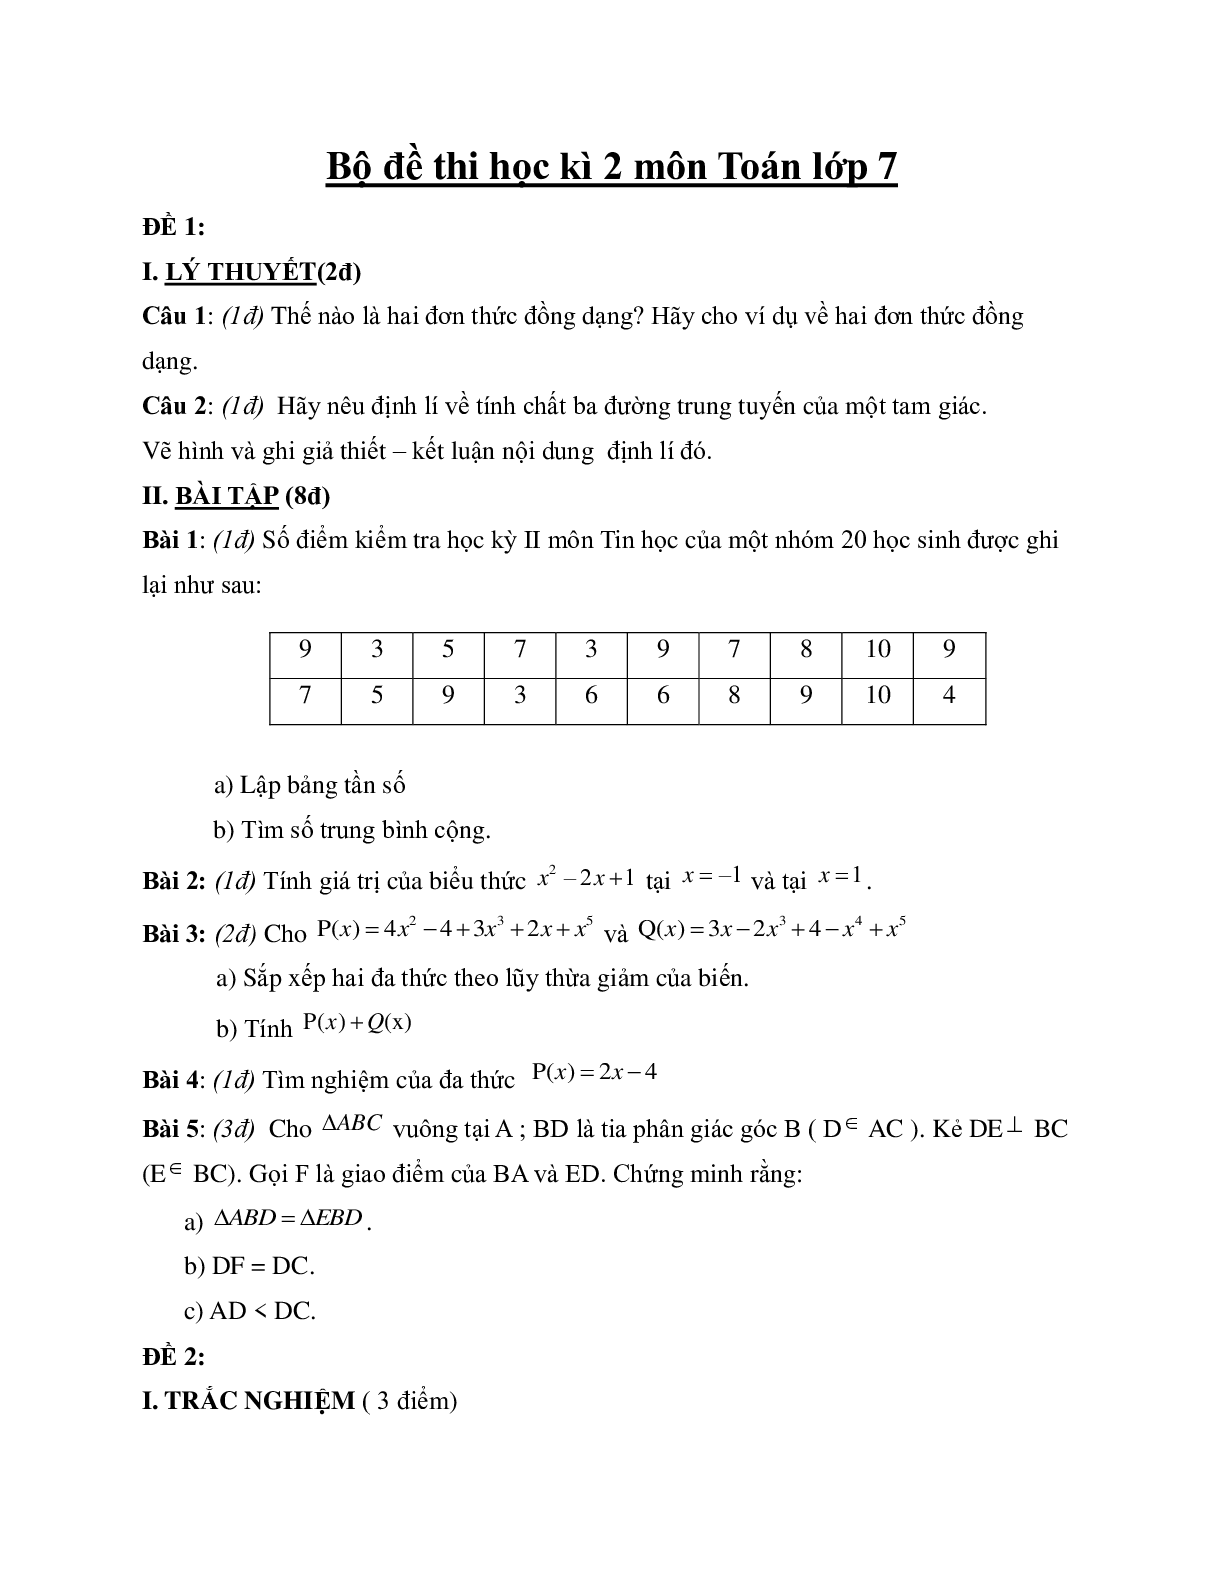 Bộ đề thi học kì 2 môn Toán lớp 7 (trang 1)